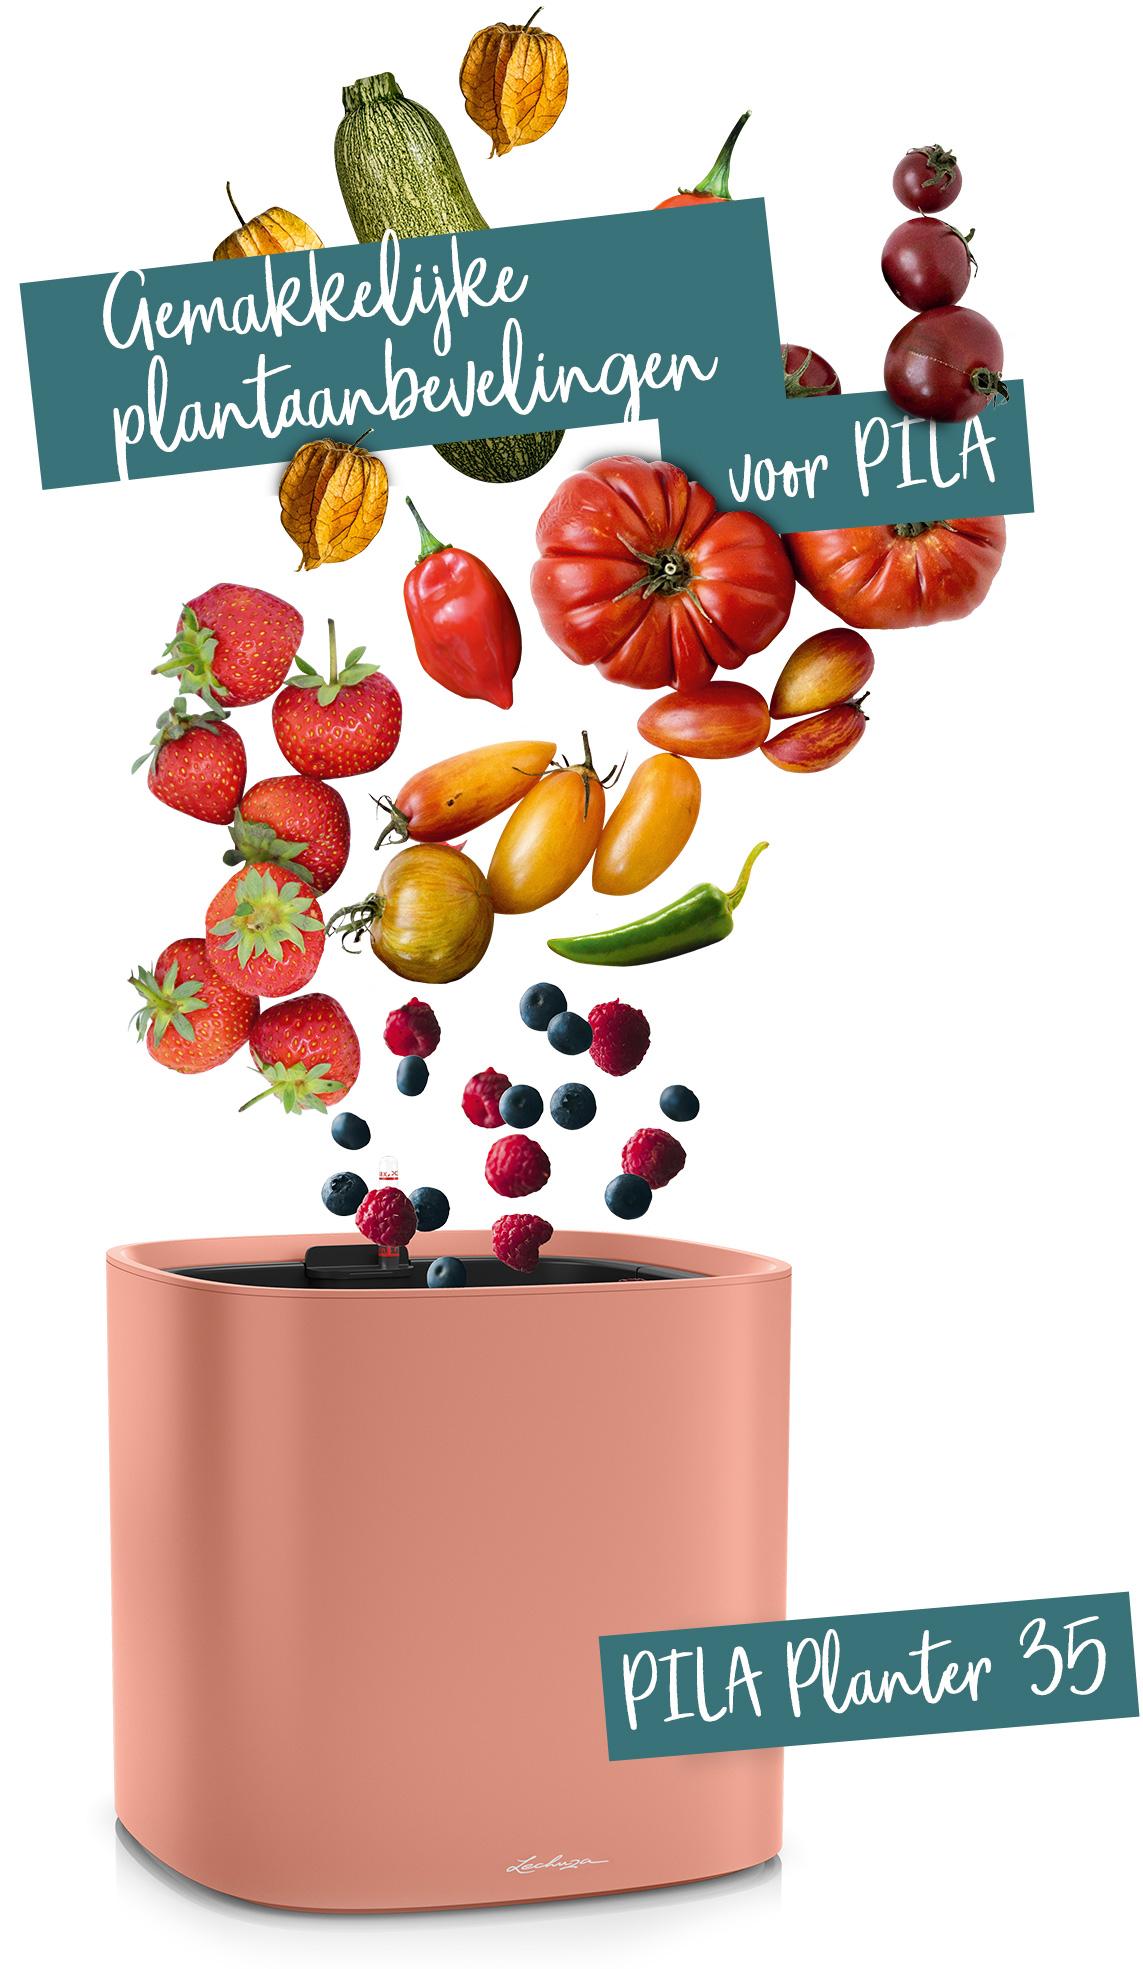 PILA Planter 35 aanbevolen voor groenten en fruit